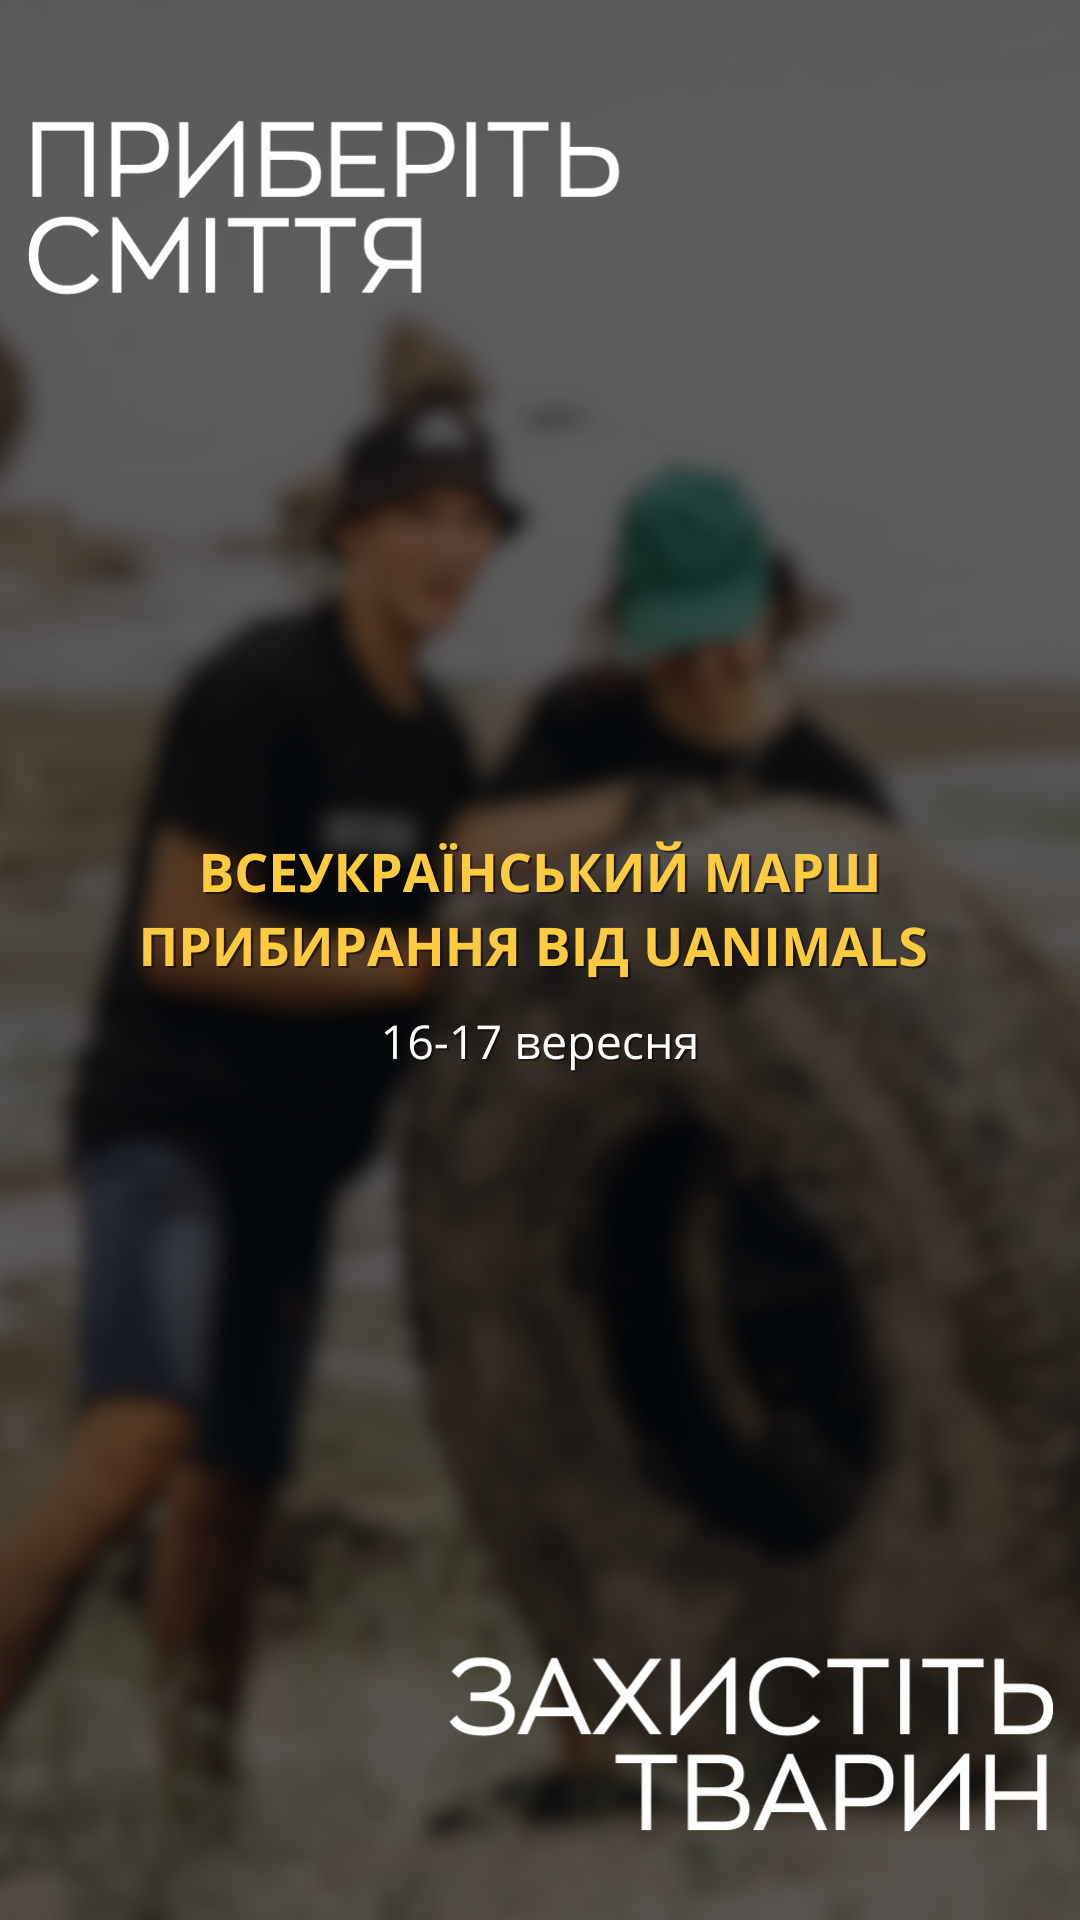 UAnimals вперше проведе Всеукраїнський марш прибирання